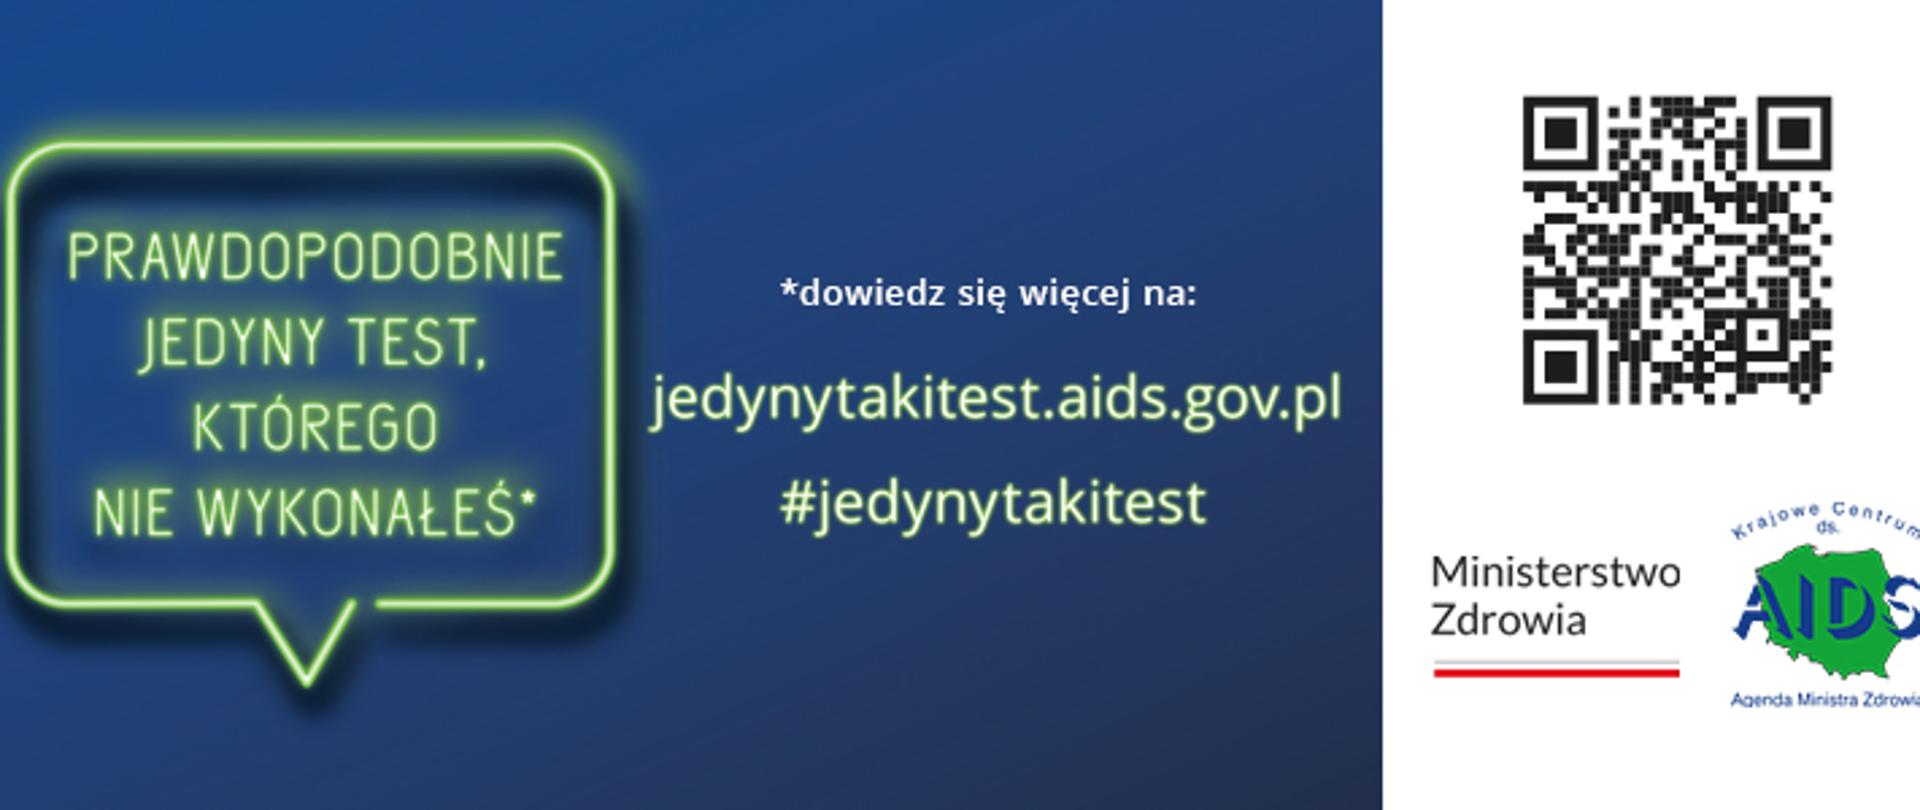 niebiesko-biały baner zachęcający do wykonania testu na HIV, adres strony internetowej i loga: Ministerstwo Zdrowia i Krajowe Centrum ds. AIDS 